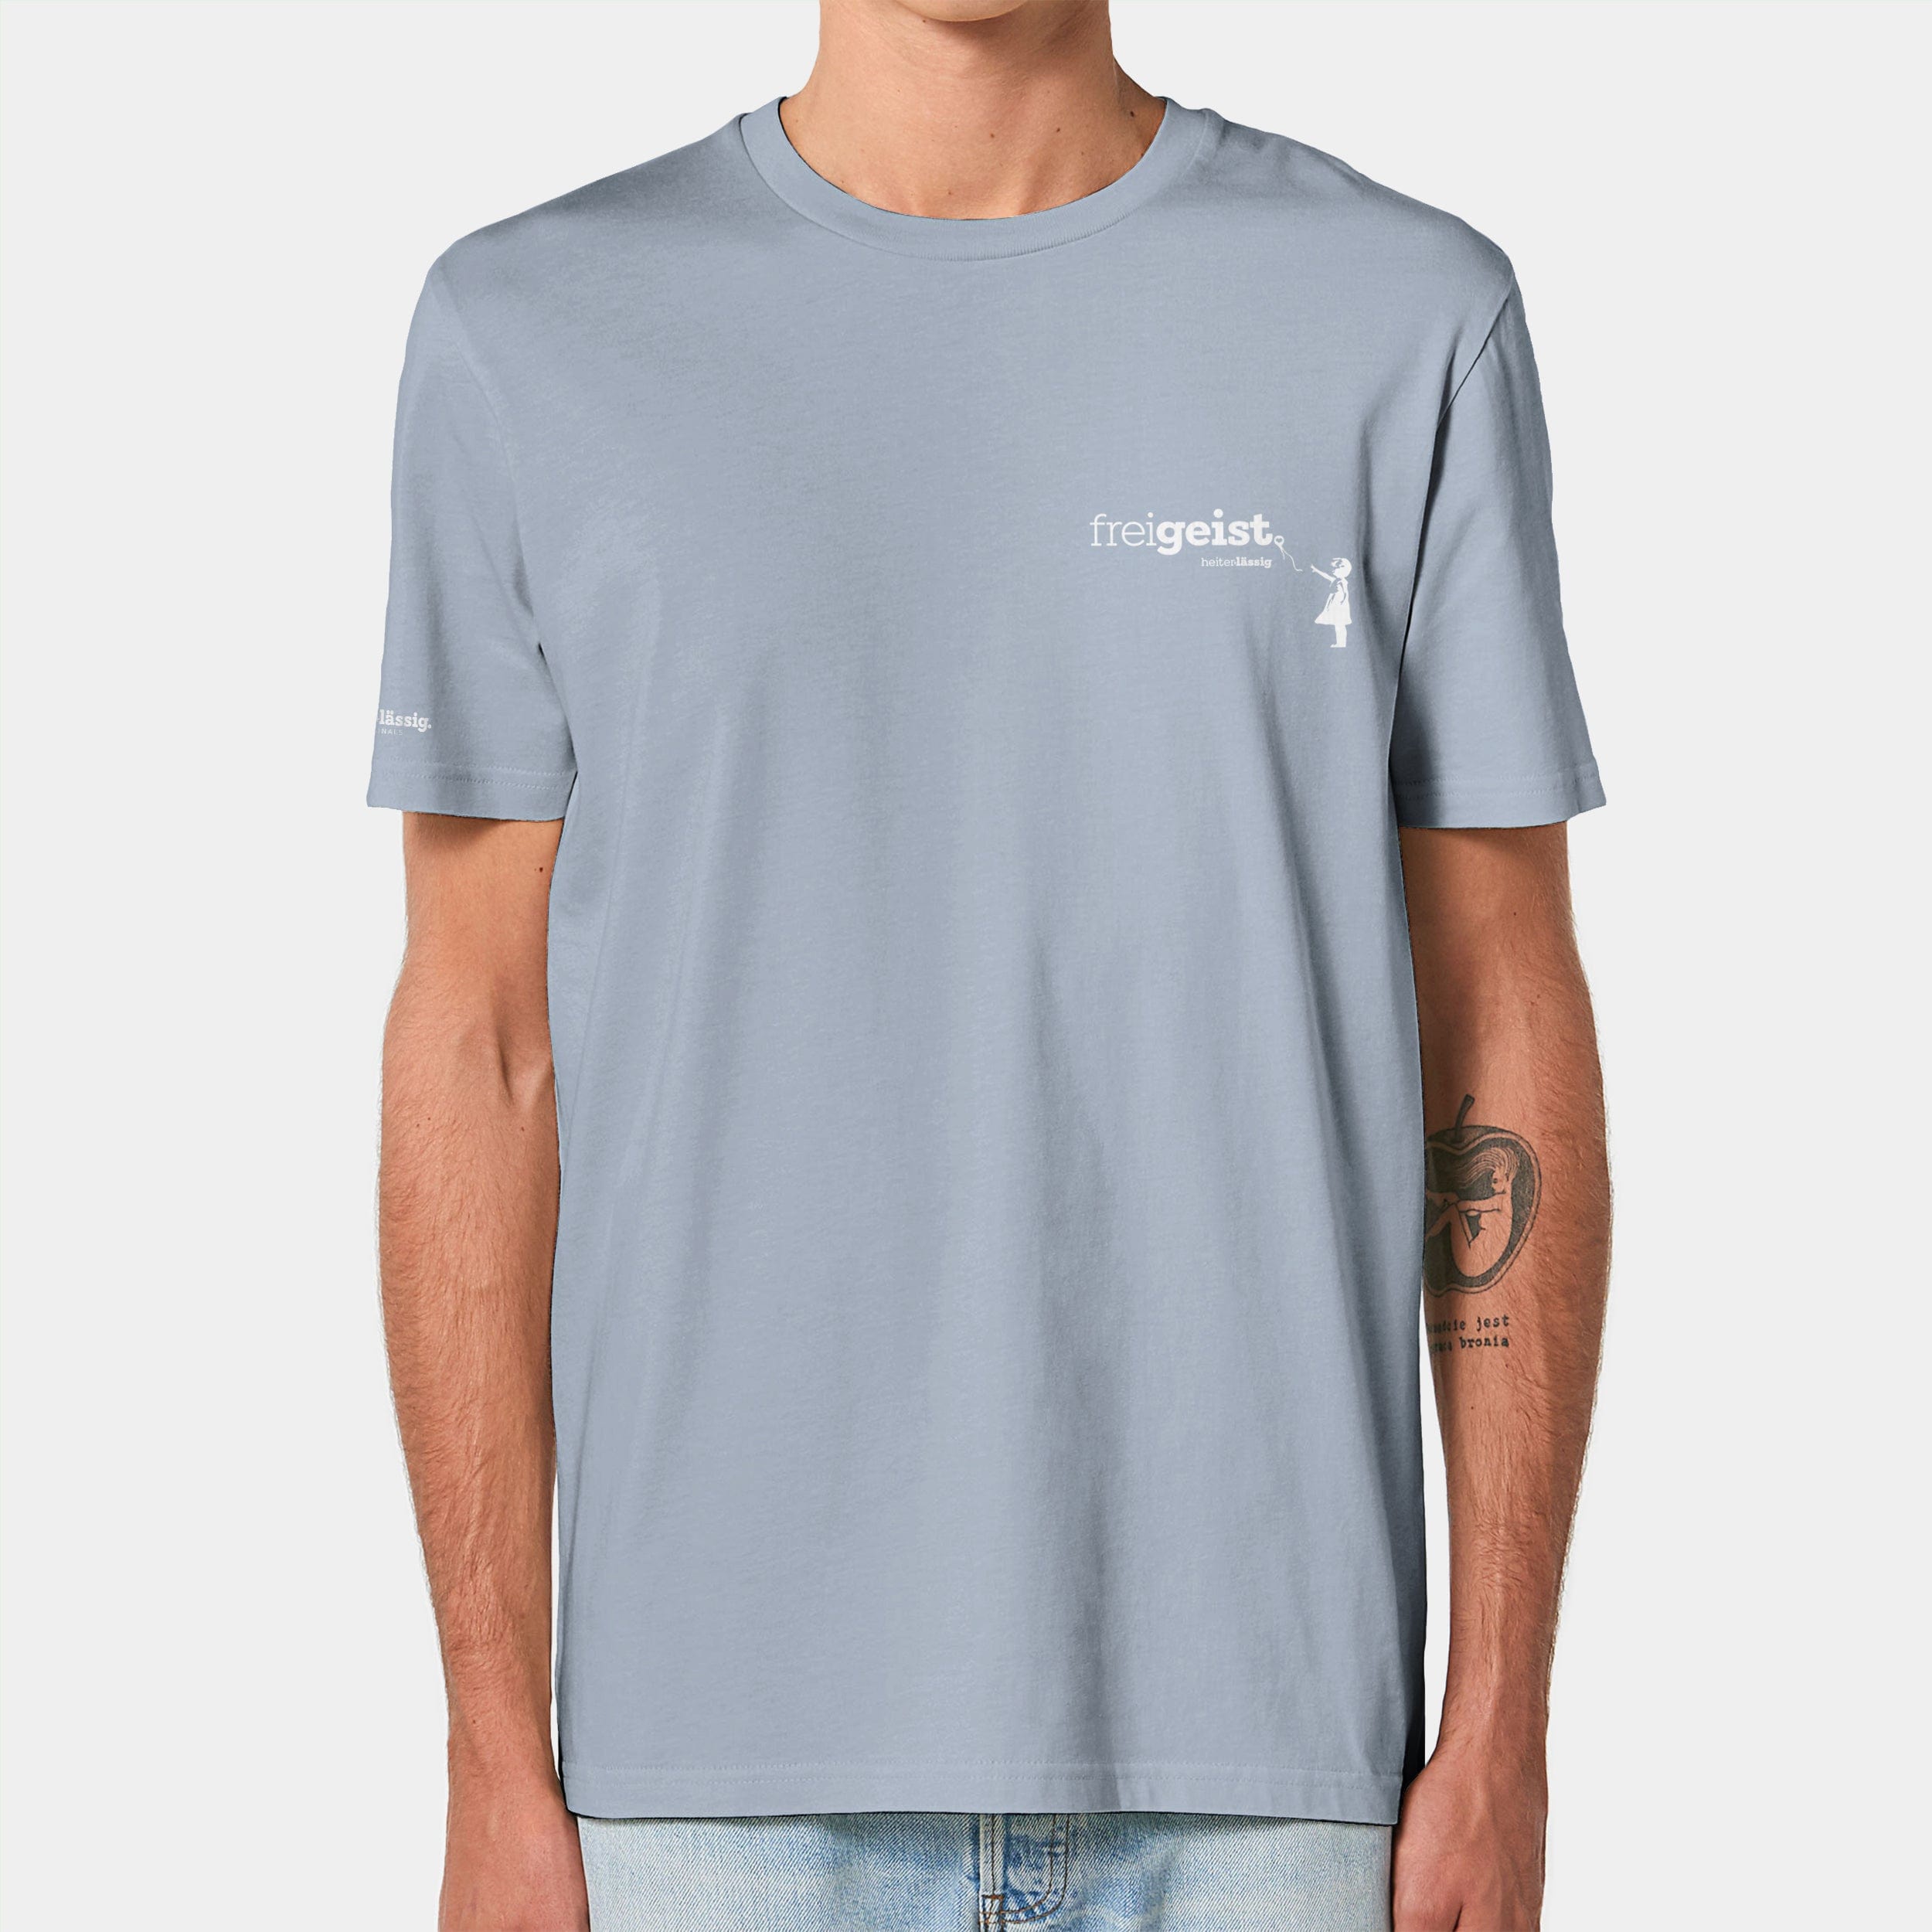 HEITER & LÄSSIG T-Shirt ORIGINAL "freigeist" XXS / serene blue - aus nachhaltiger und fairer Produktion